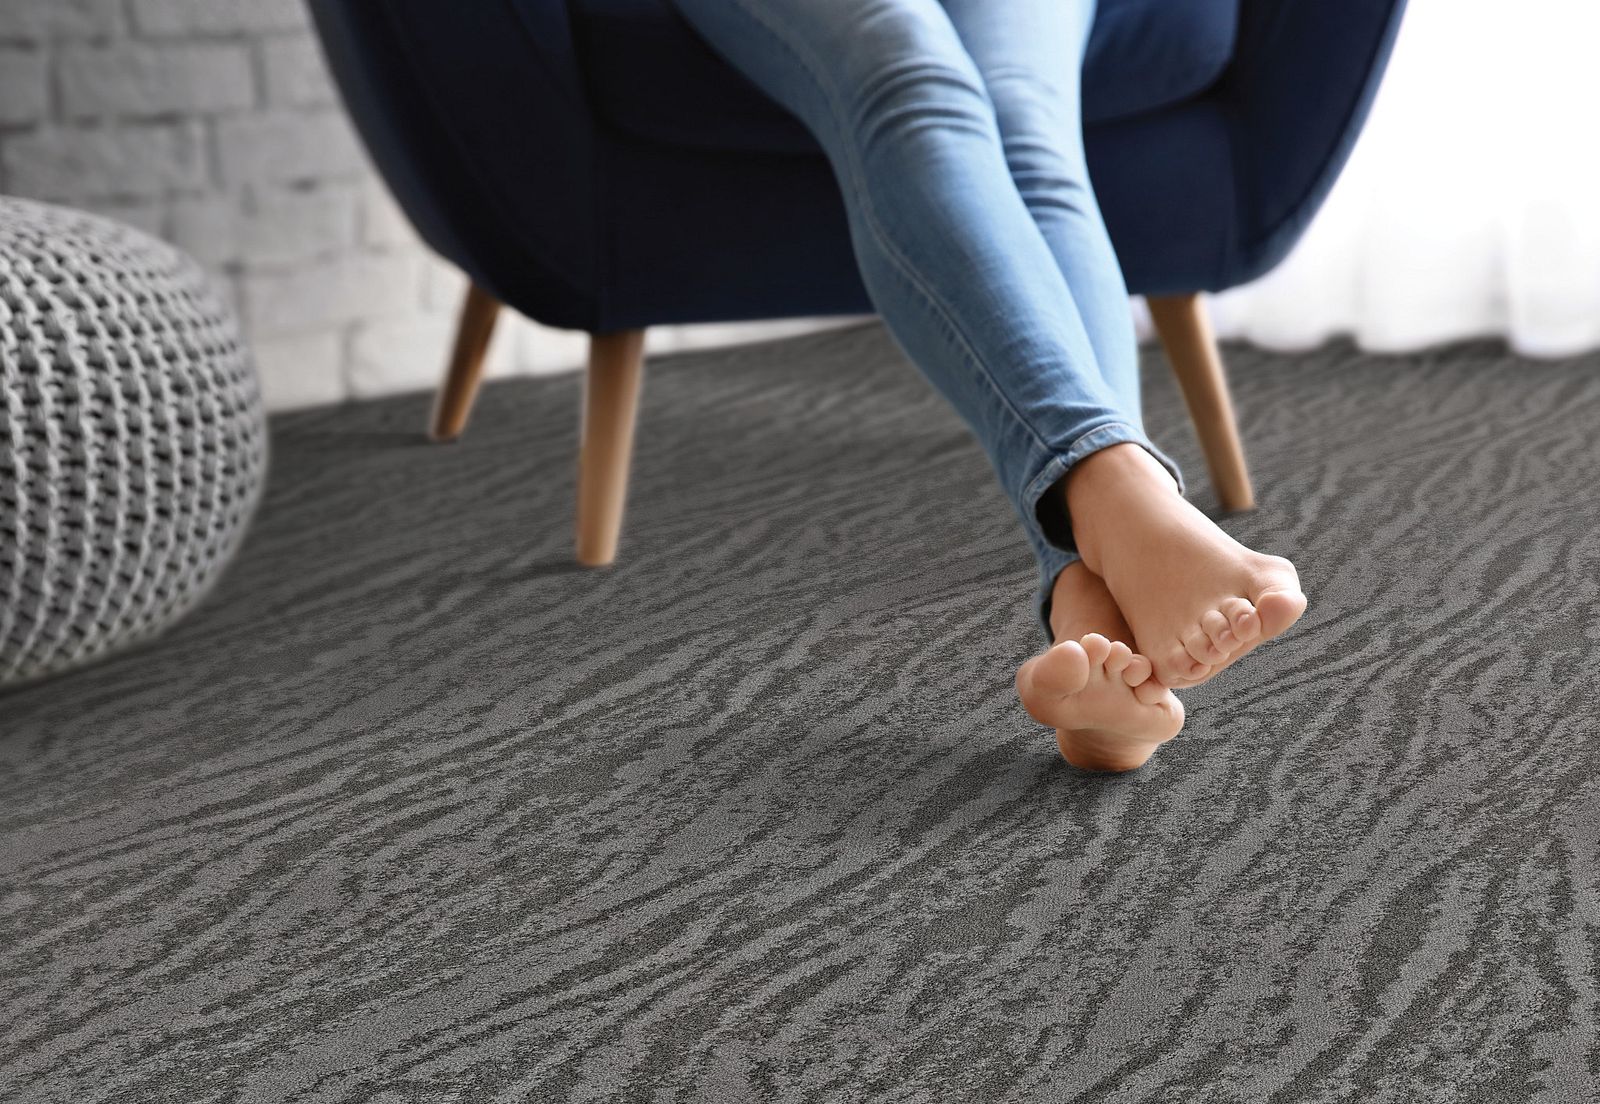 Carpet Cushion Carpet Pad Shaw Floors